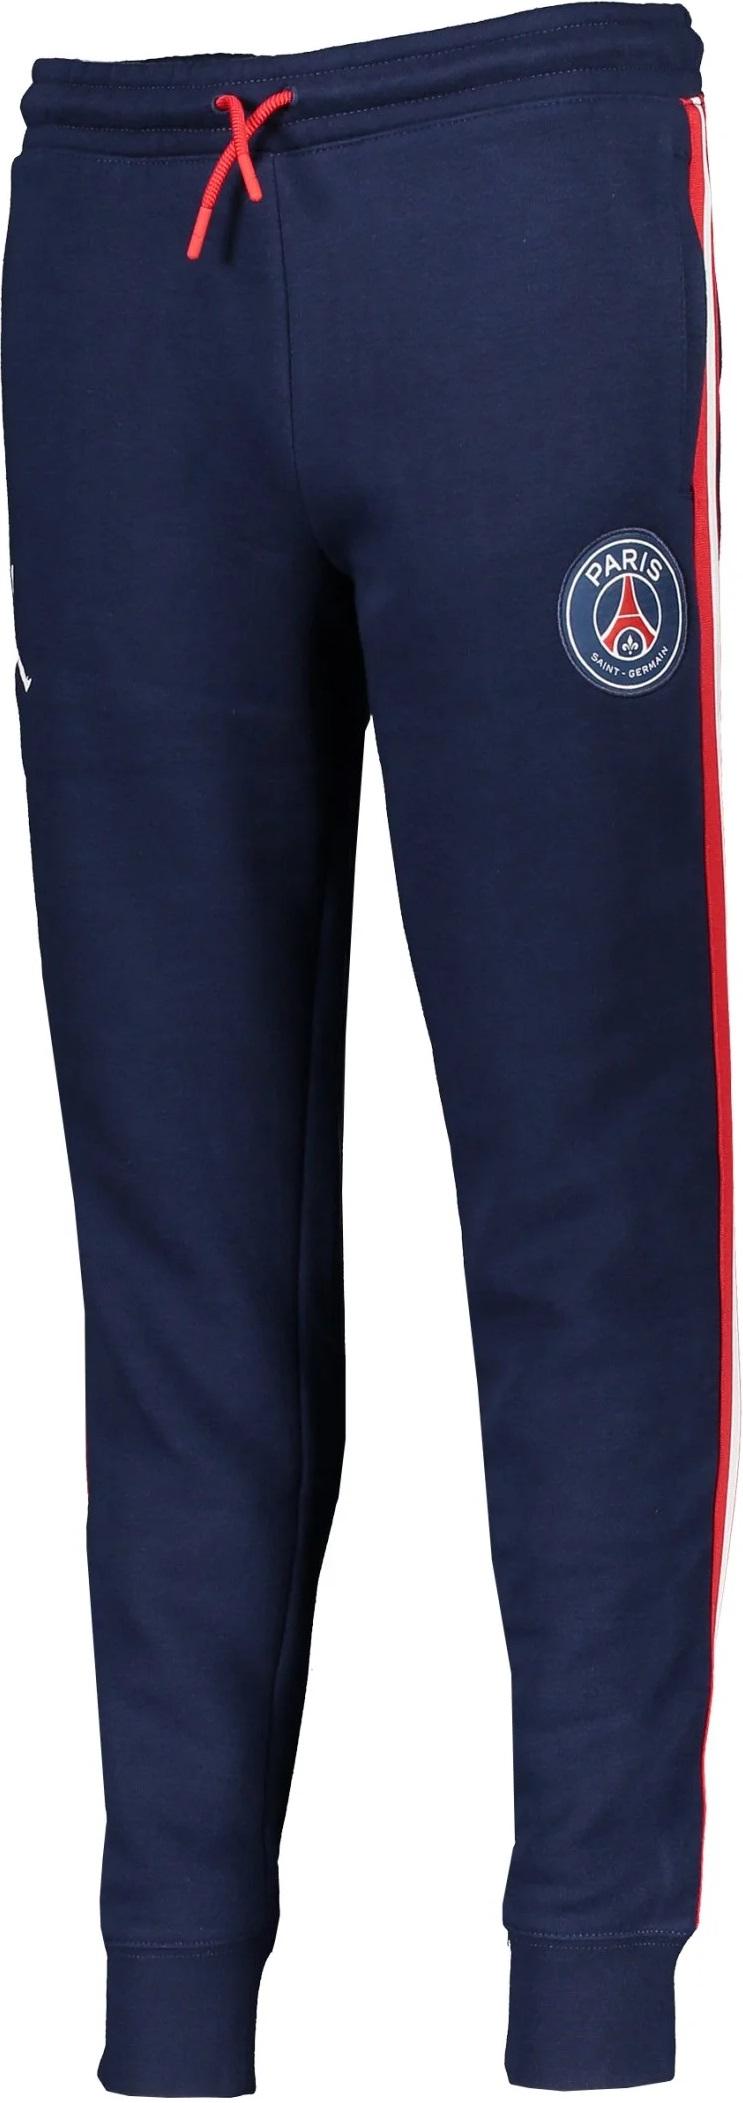 Dětské kalhoty Jordan X PSG